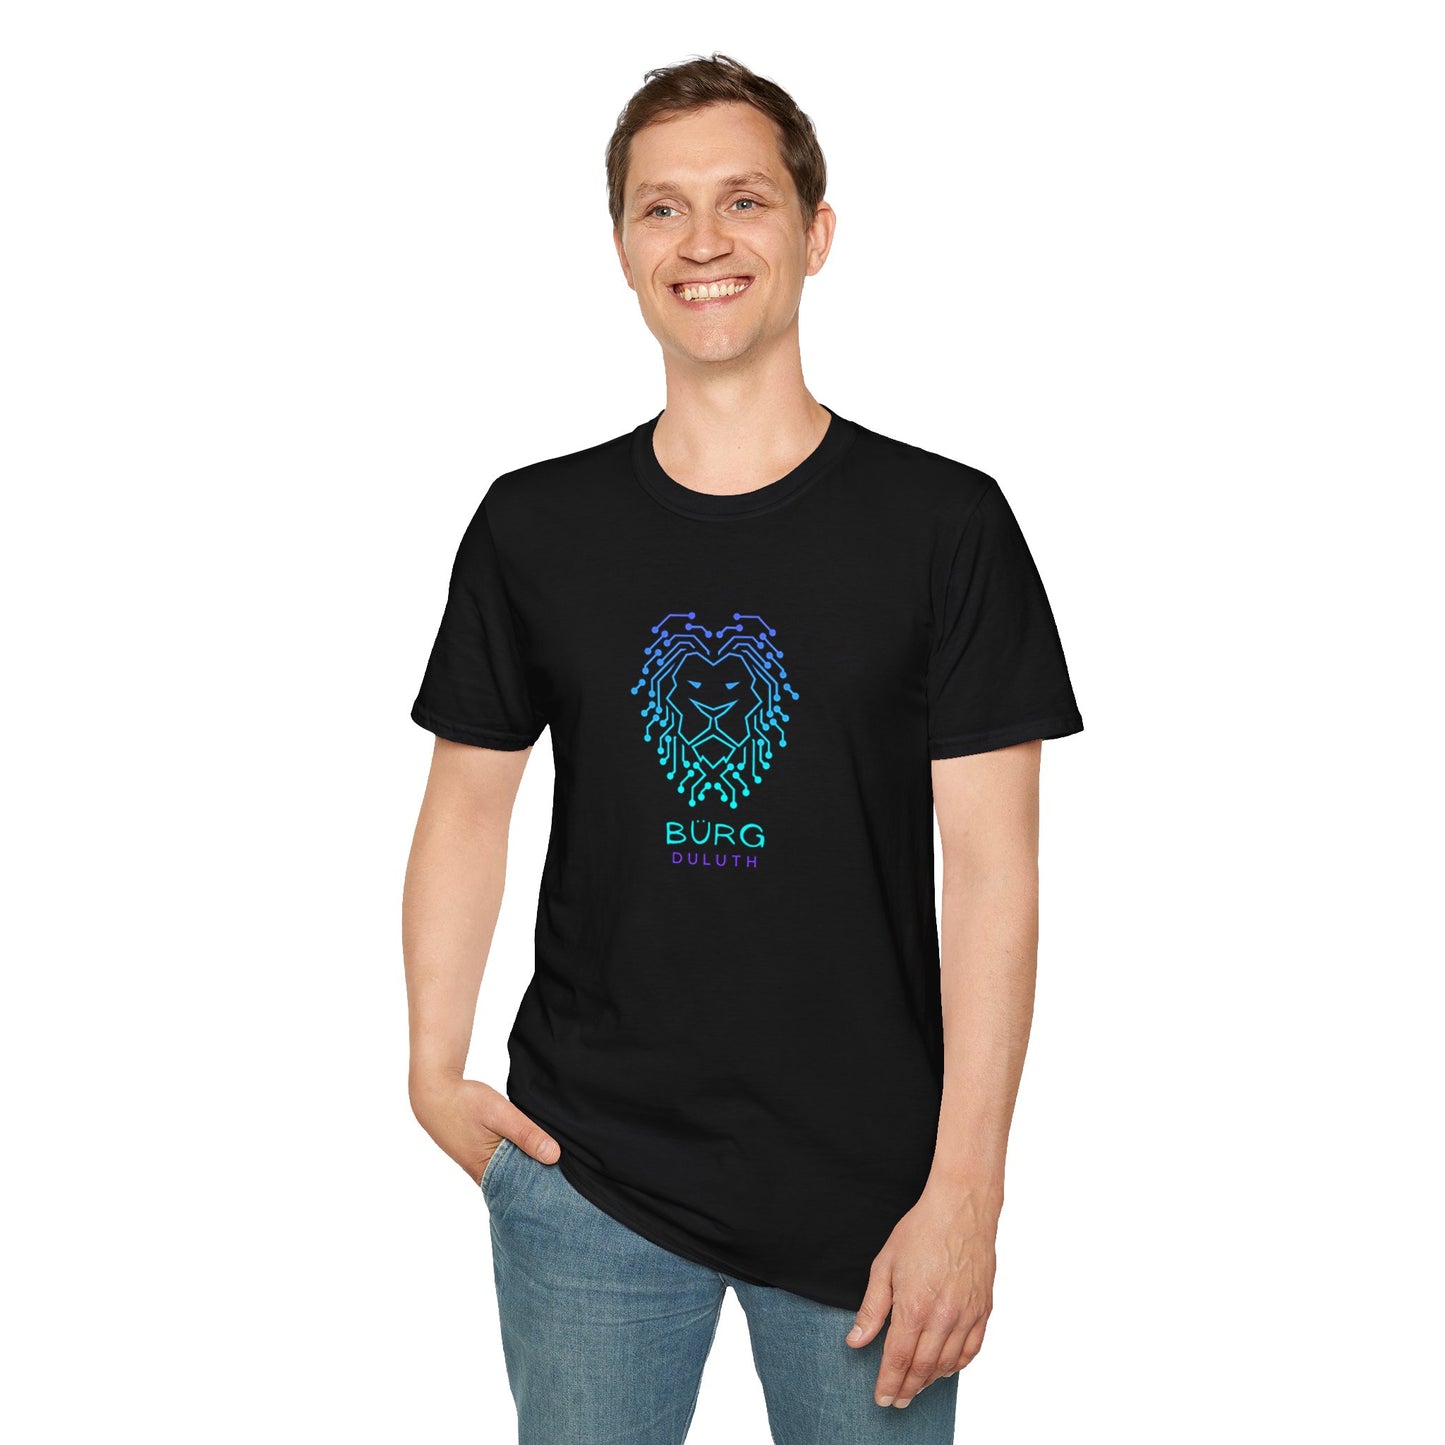 BURG LION Unisex Softstyle T-Shirt BLACK